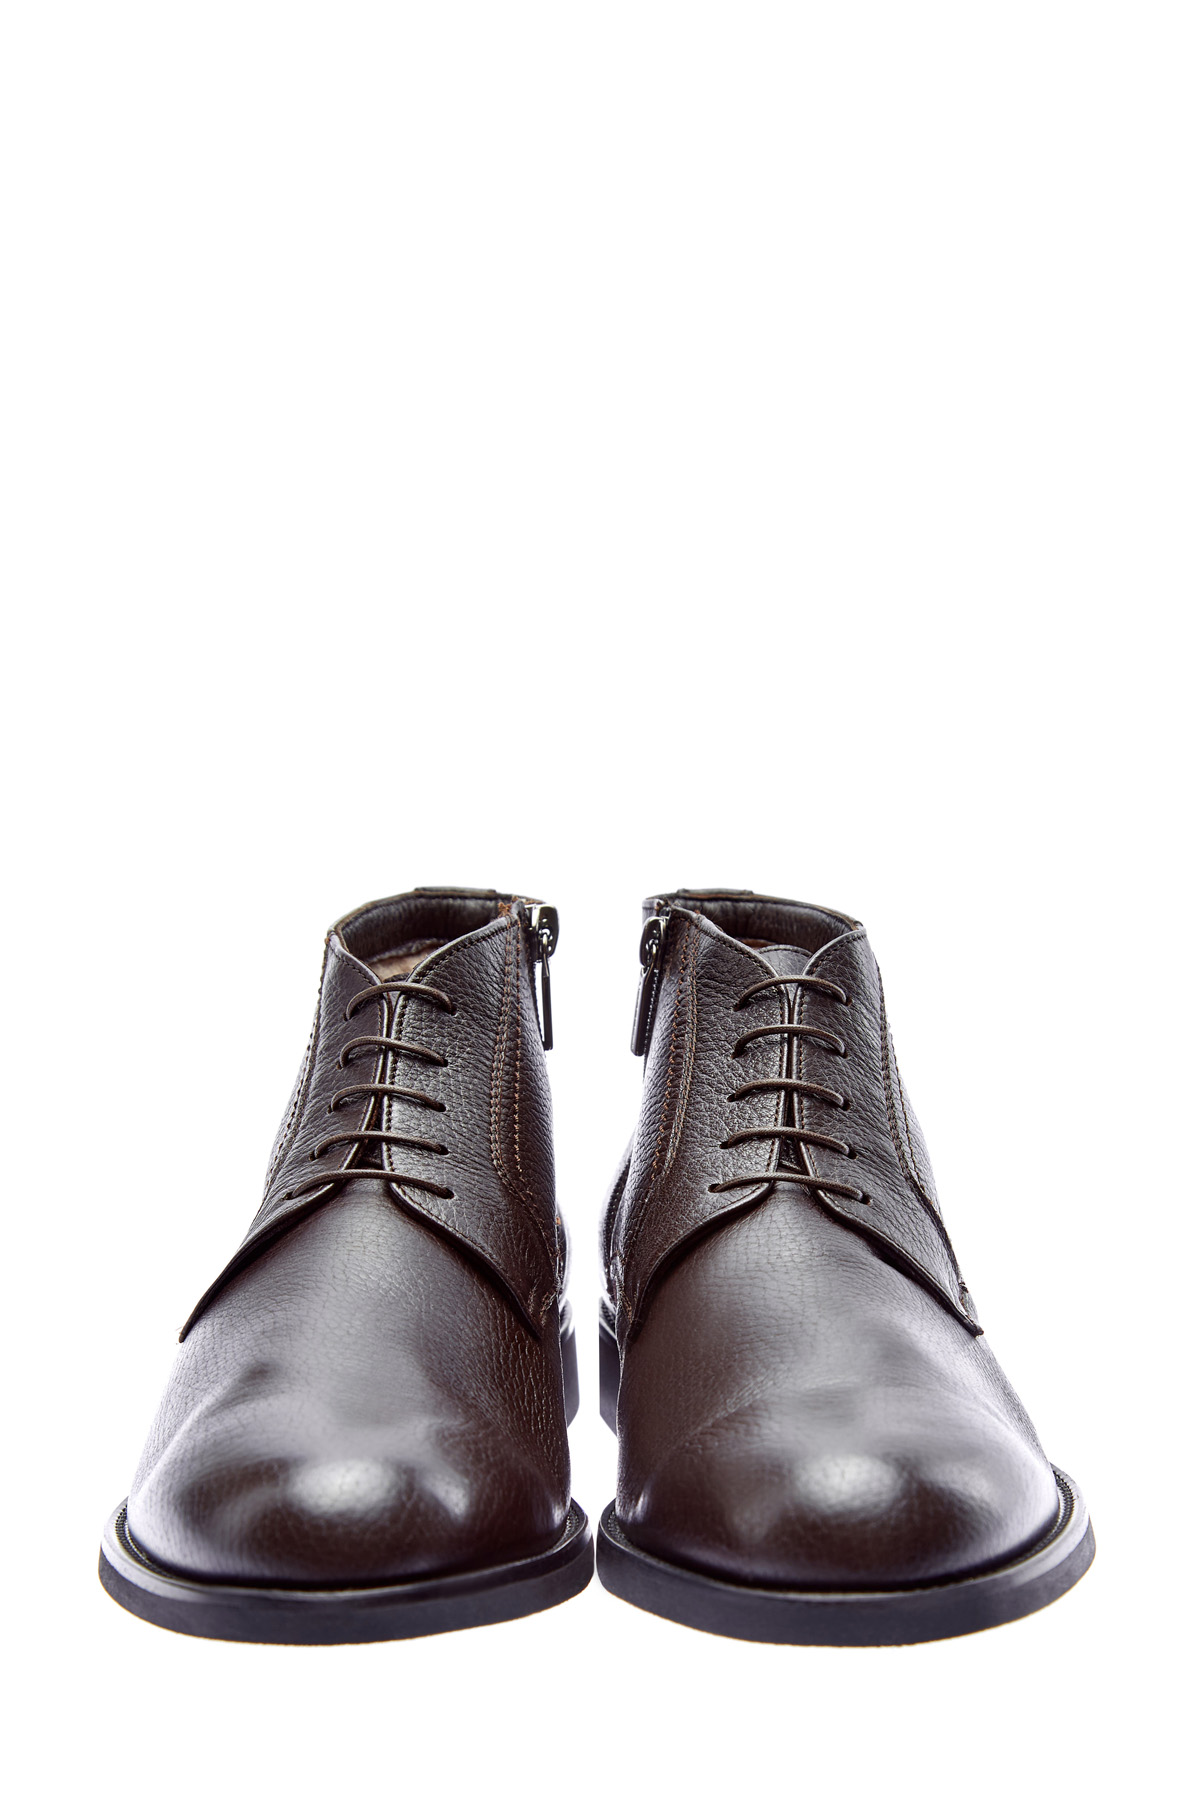 Высокие ботинки-дерби ручной работы из кожи оленя MORESCHI, цвет коричневый, размер 42.5;43;43.5 - фото 6